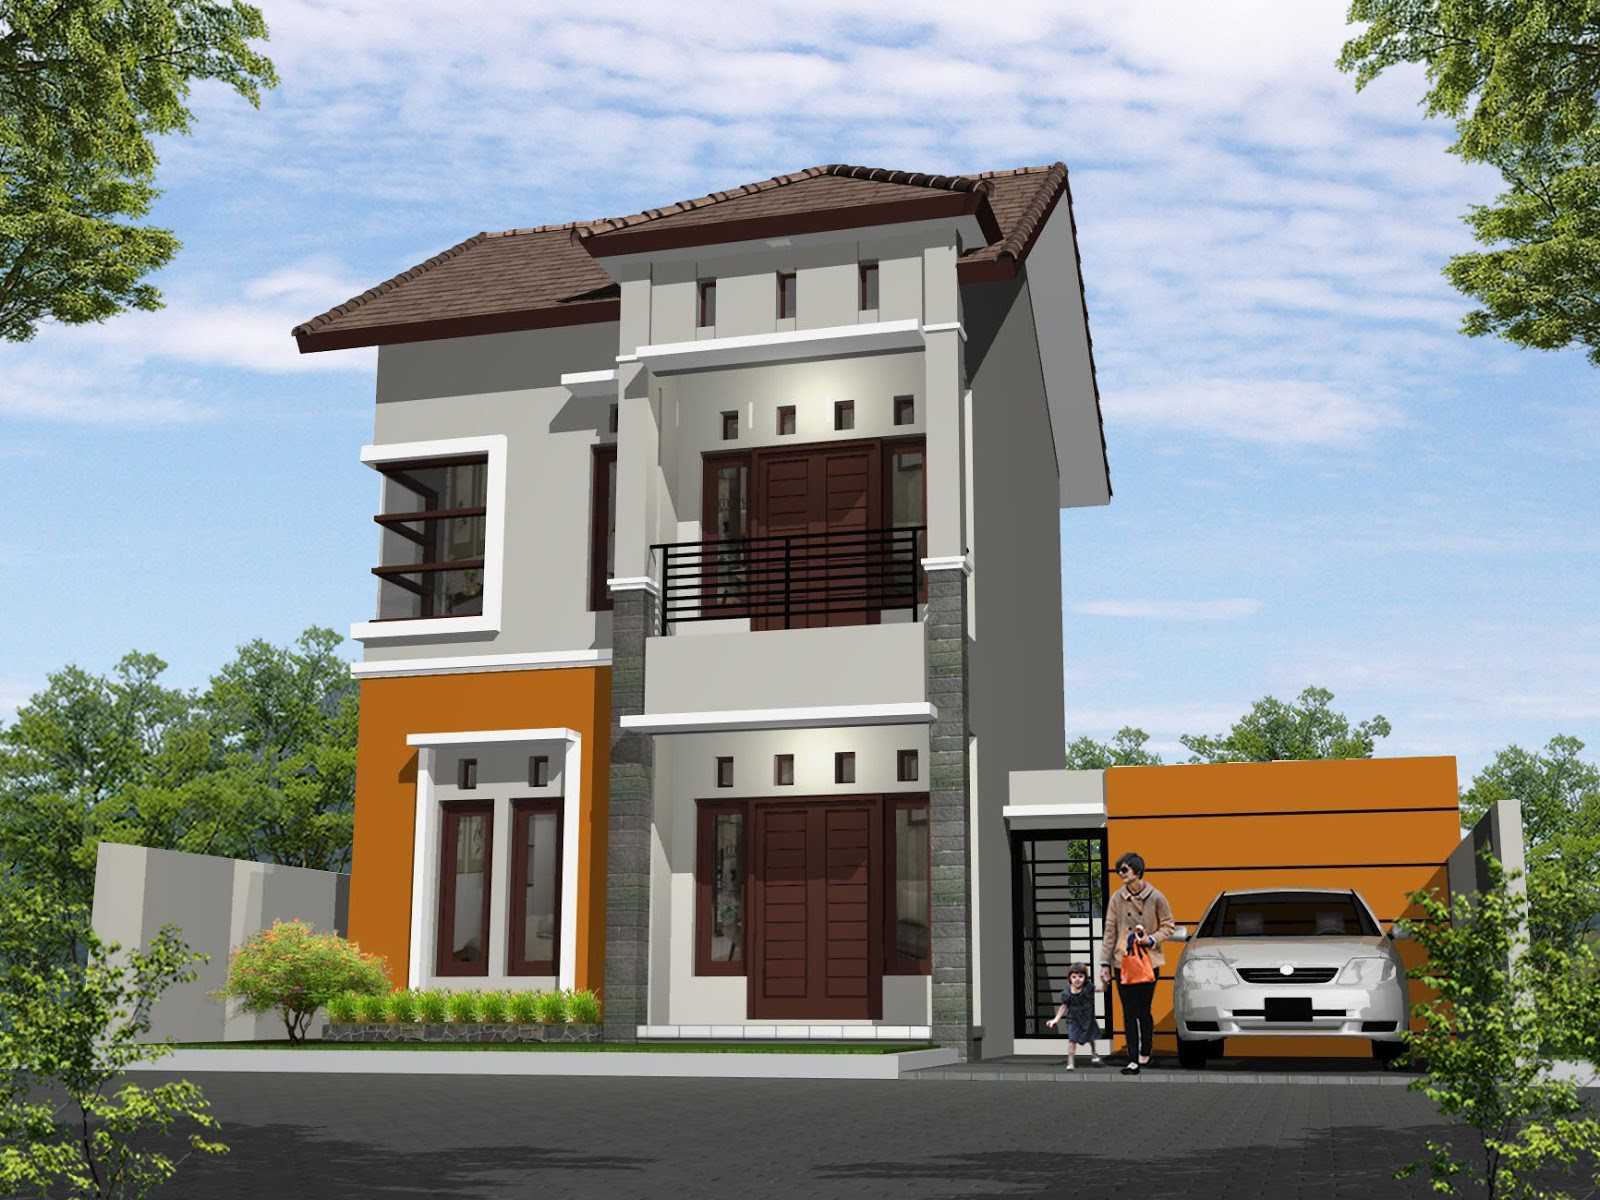 Desain Rumah 2 Lantai Sederhana dengan Garasi Mobil Sederhana dengan Warna Abu Abu